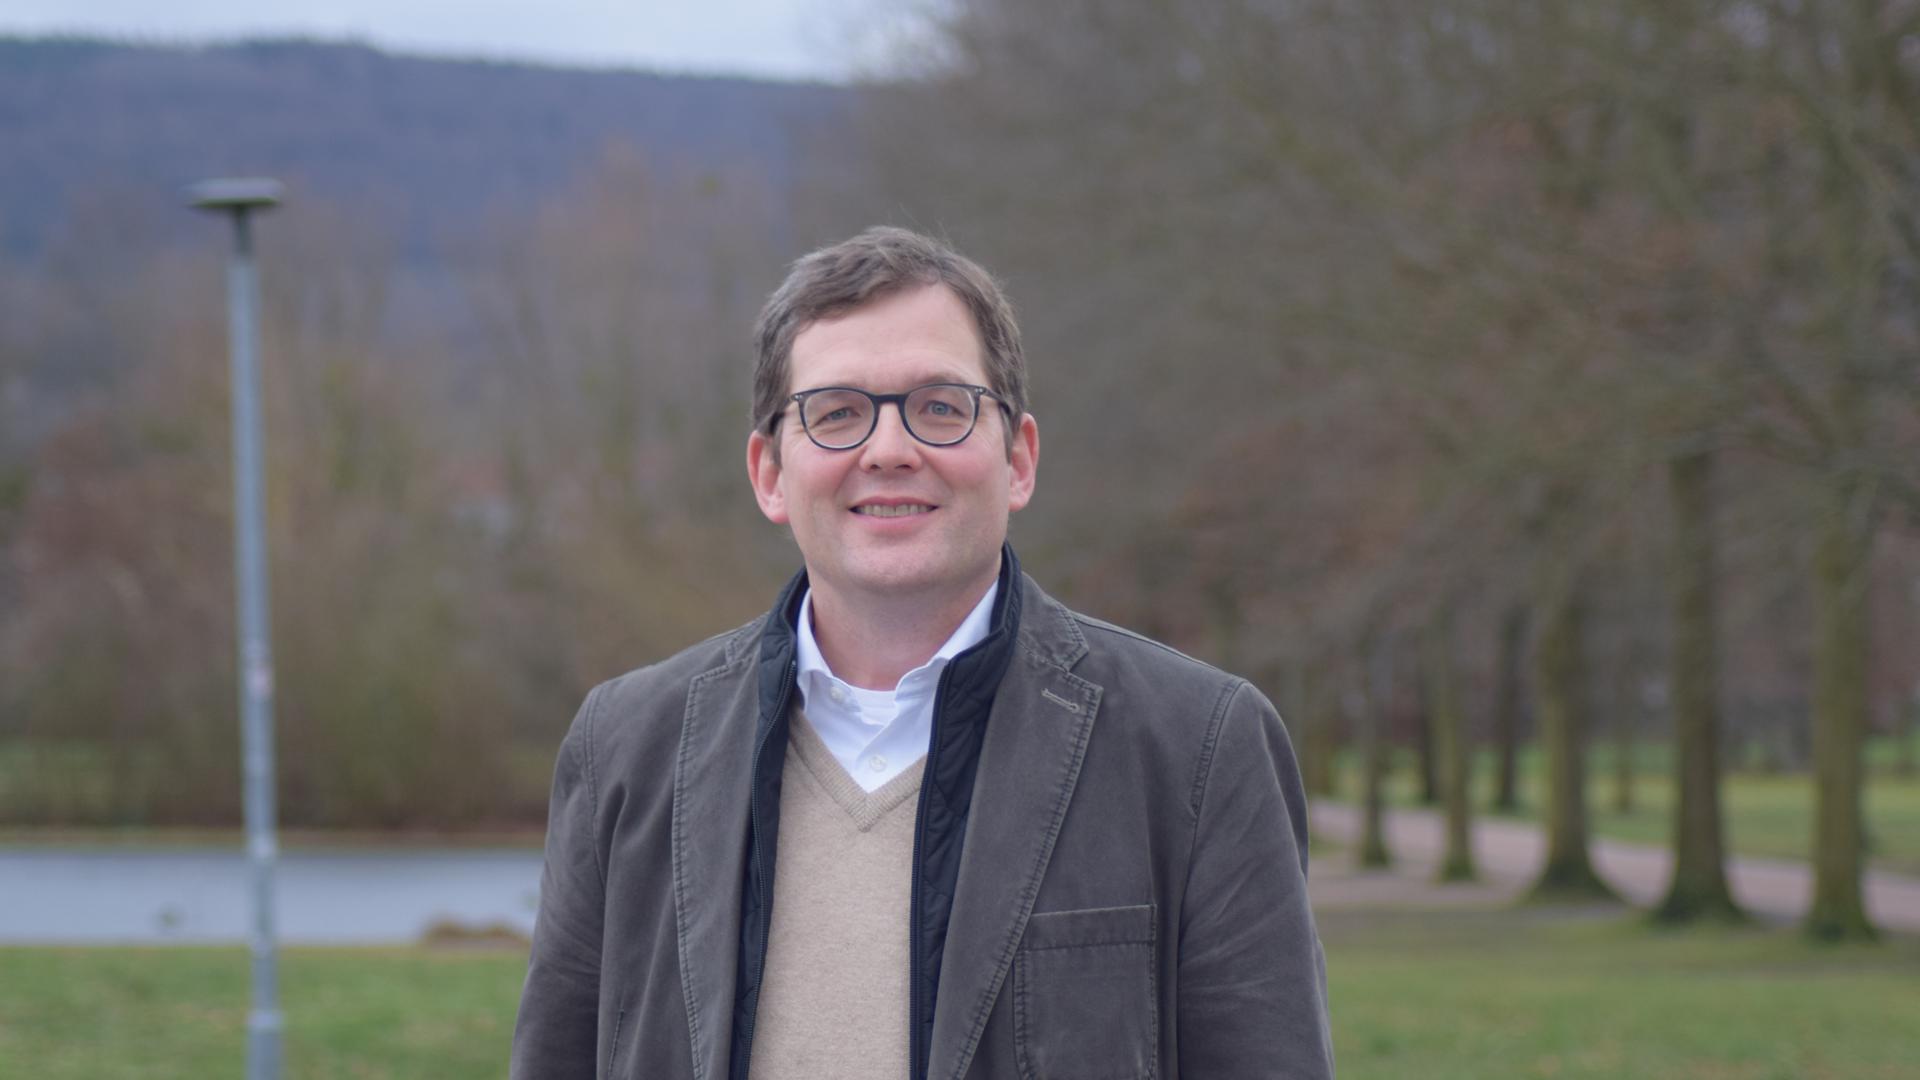 Will noch einmal antreten: Elmar Himmel (SPD) bewirbt sich für eine dritte Amtszeit als Bürgermeister von Malsch. Die Wahl soll im Juni stattfinden.